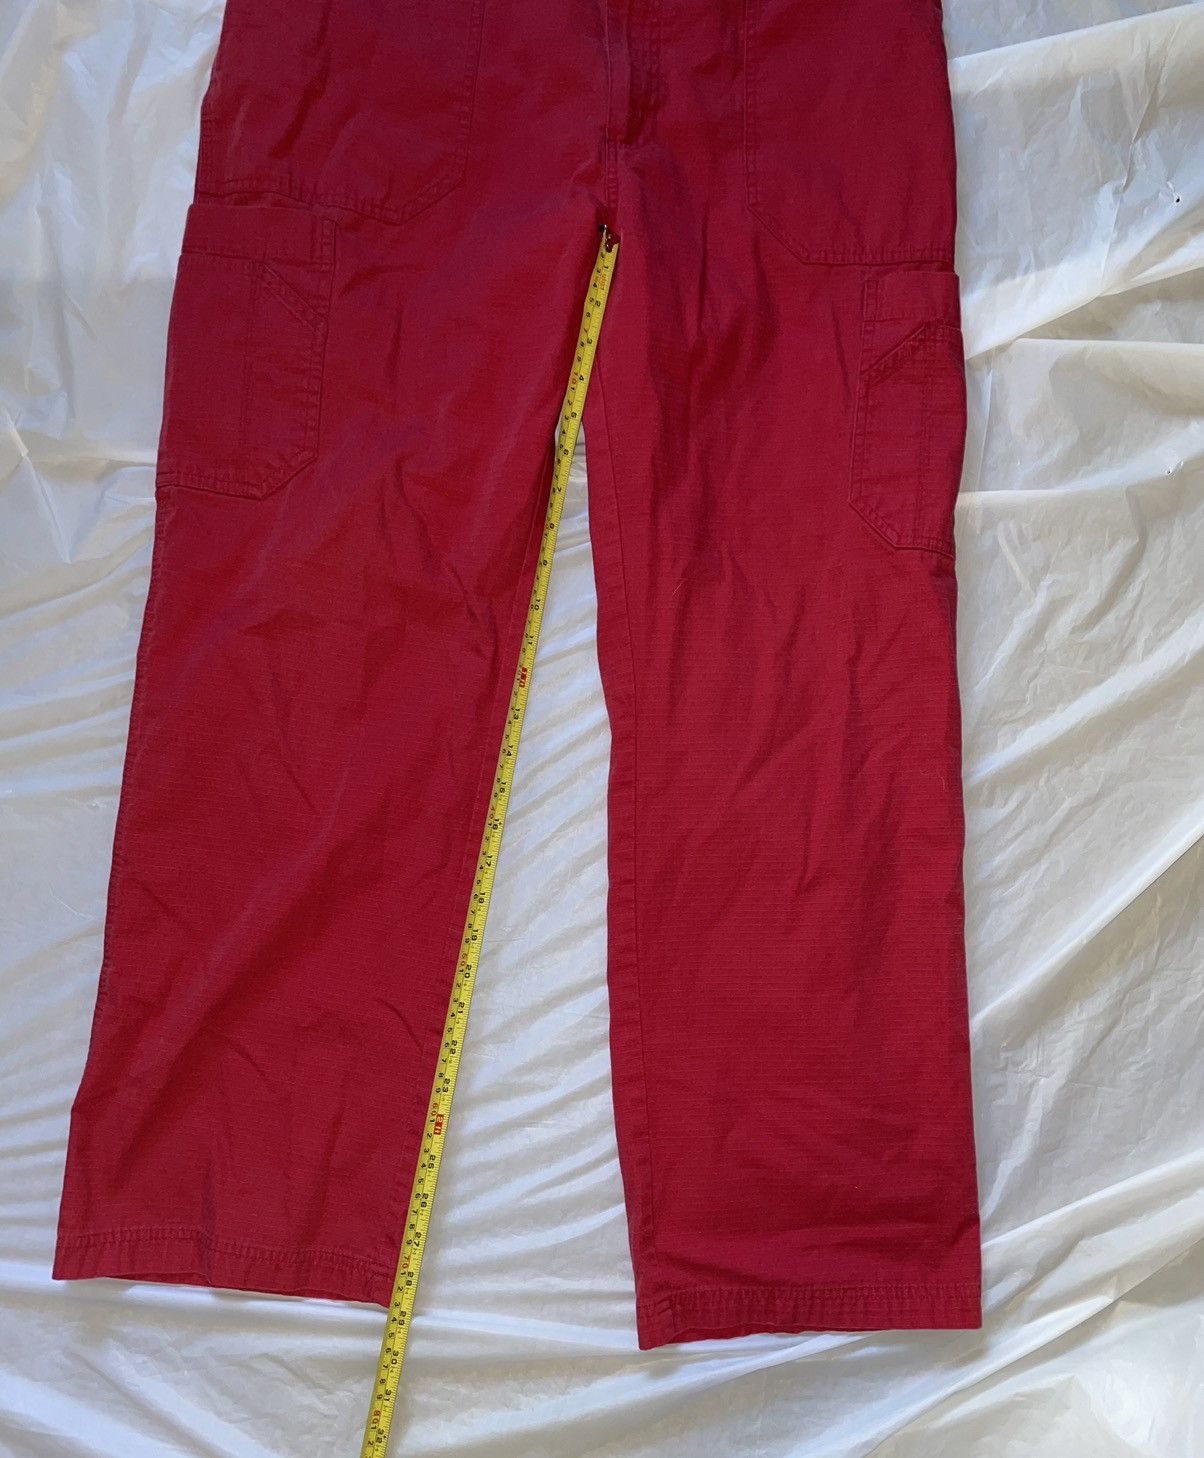 Carhartt Carhartt Lightweight Red Cargo Pants Size US 36 / EU 52 - 8 Thumbnail